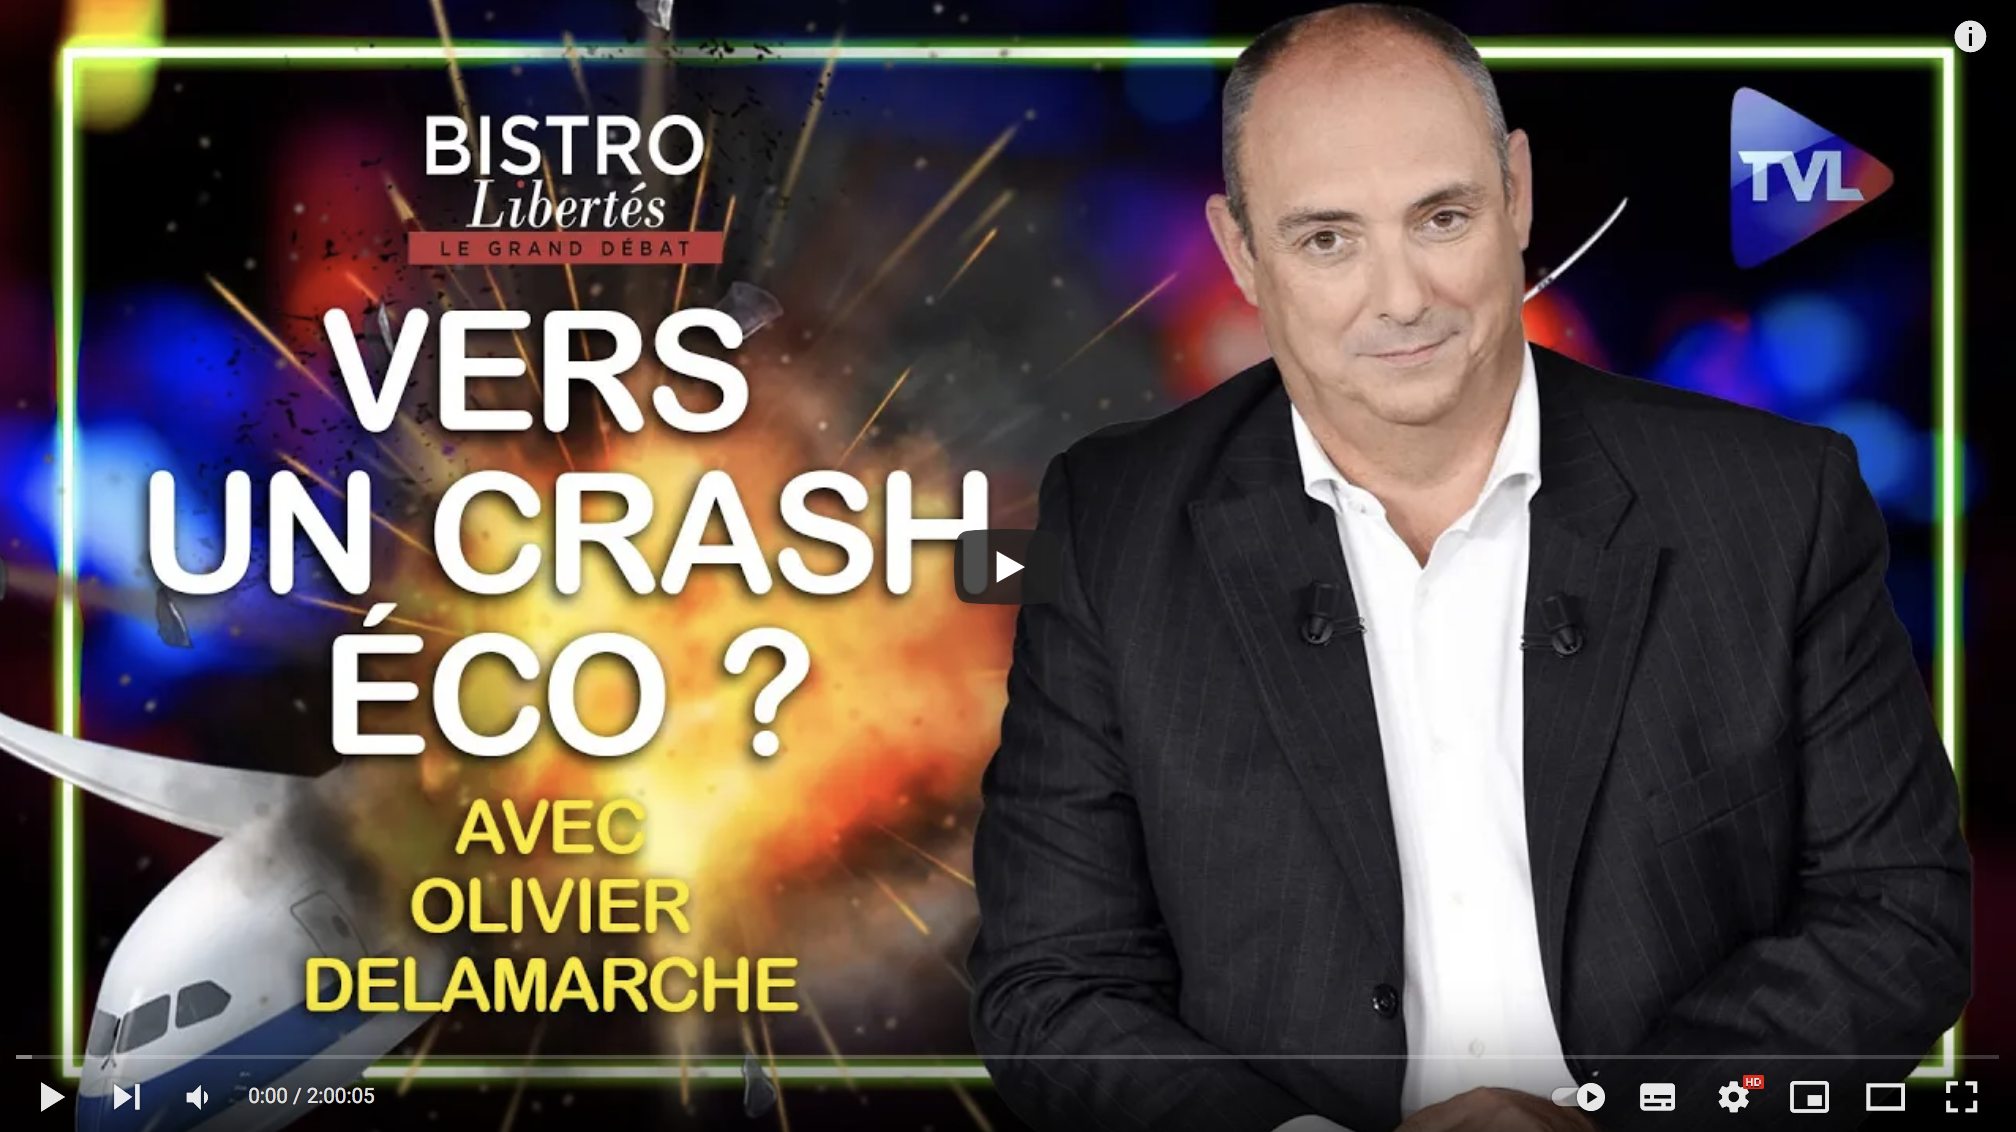 Vers un crash éco ? – Bistro Libertés avec Olivier Delamarche (ENTRETIEN)